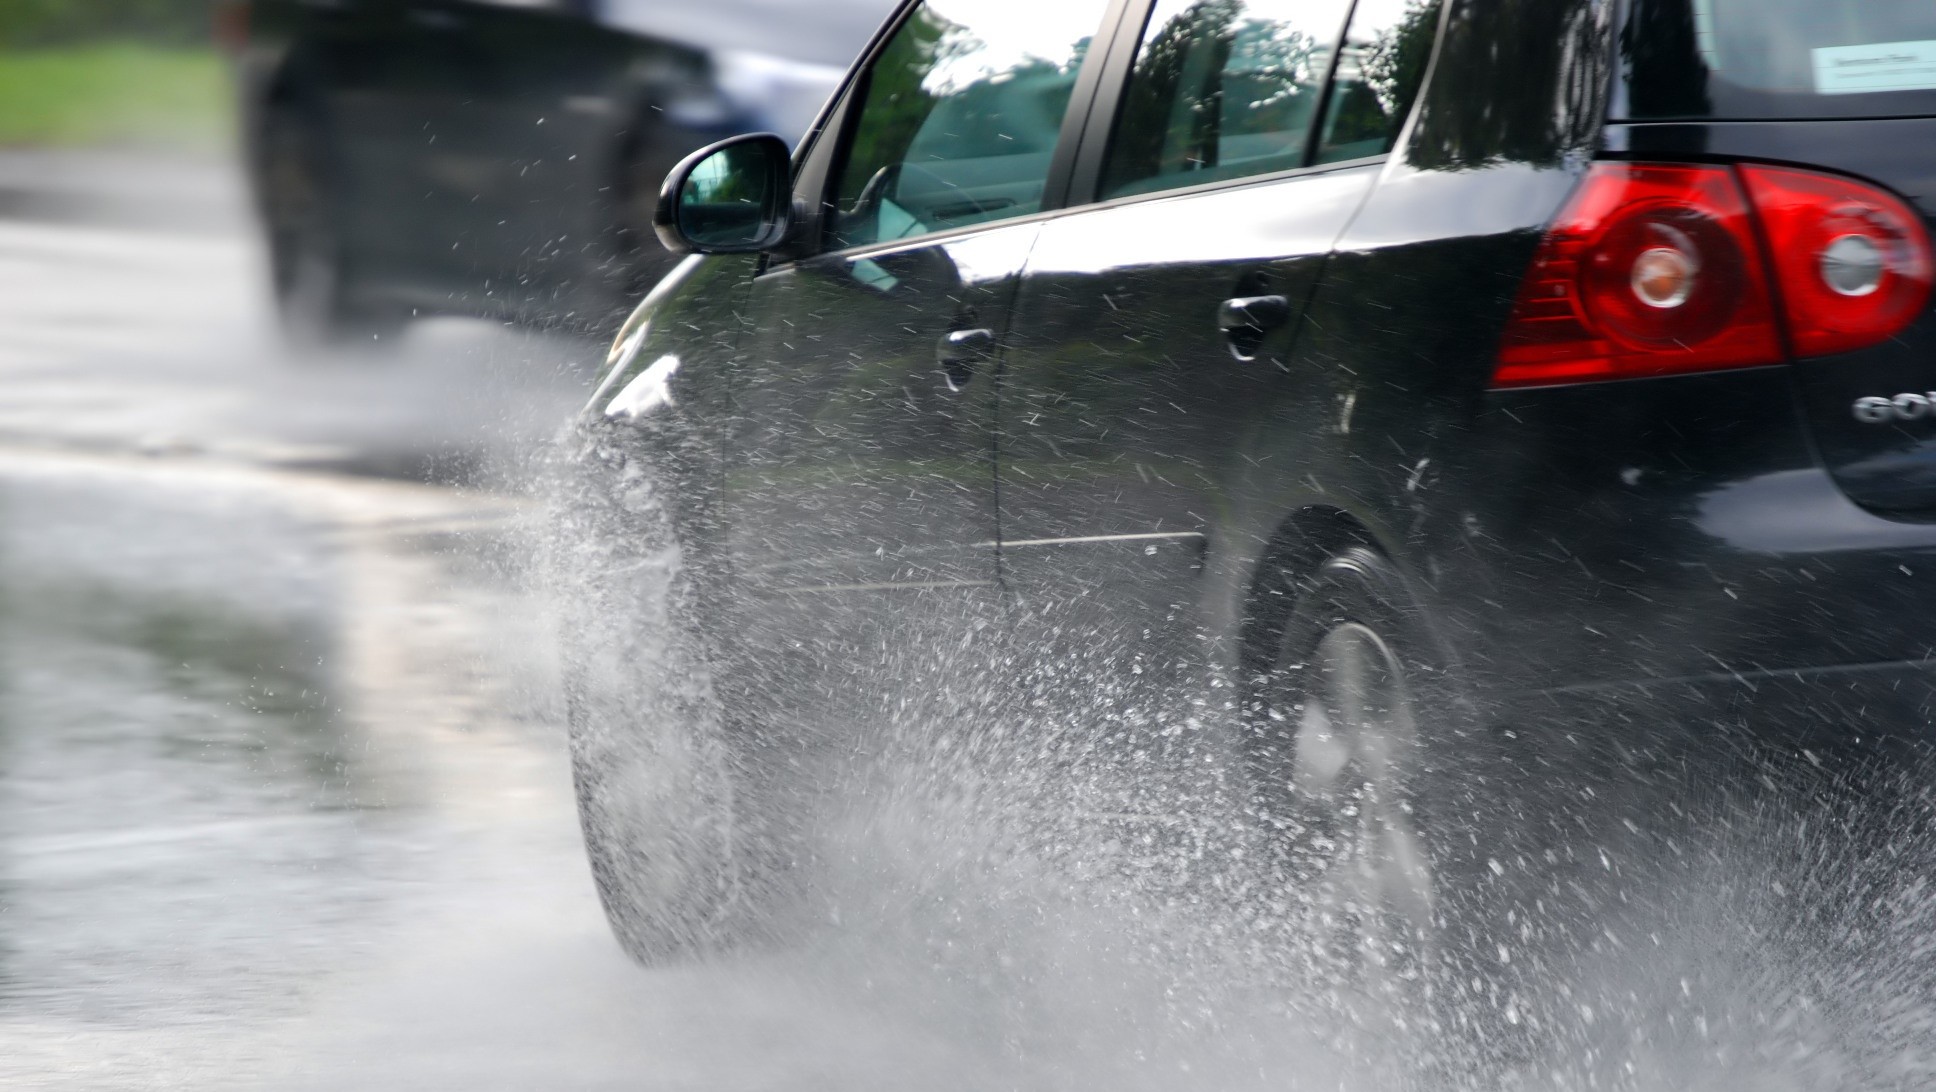 Хурдны удирдлага асаалттай үед бороонд машин жолоодоход аюулгүй юу?